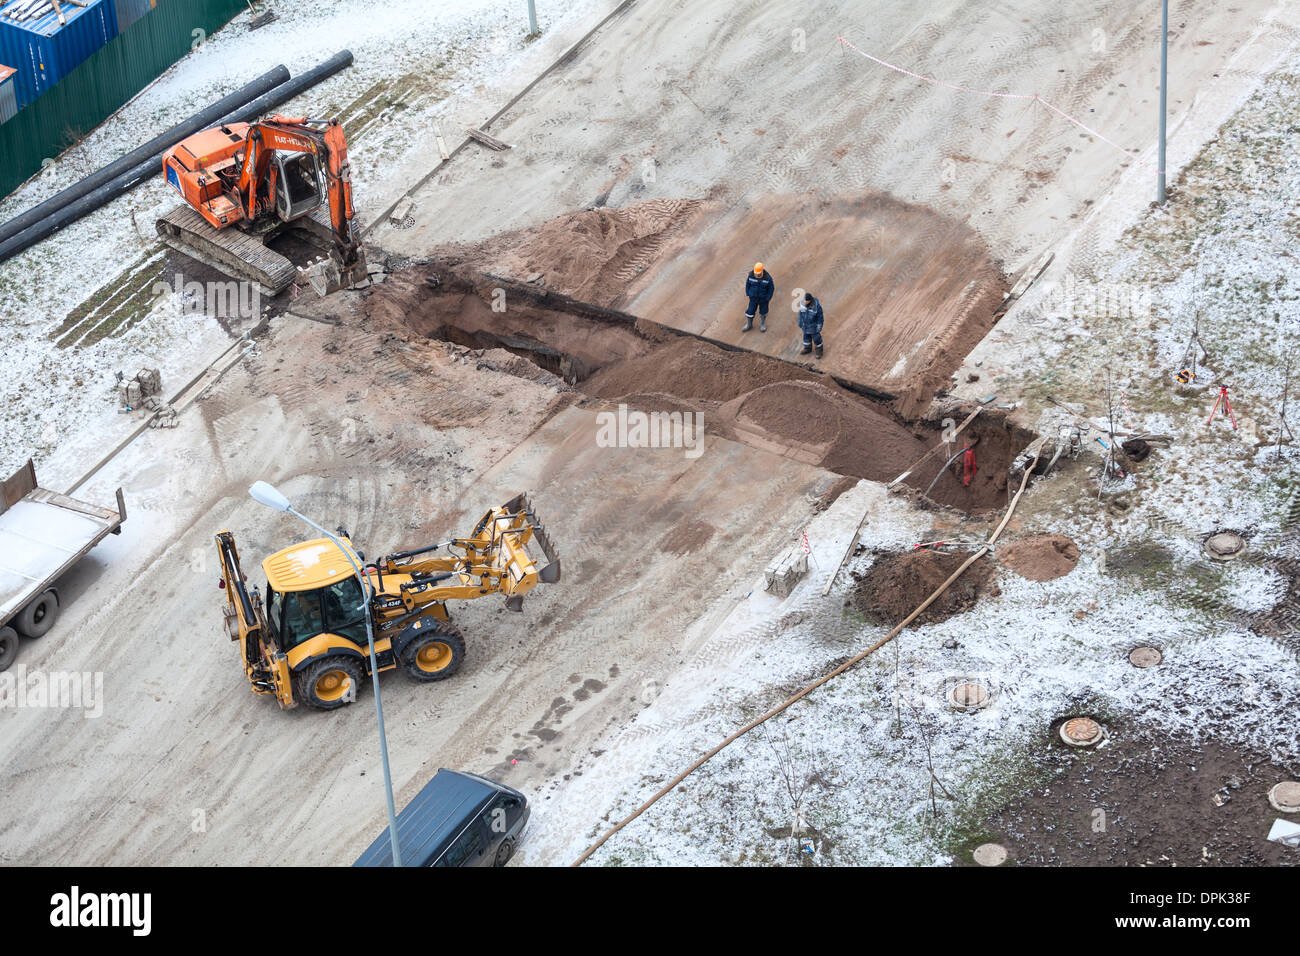 Arbeiten Sie mit der Überarbeitung der Heizung auf der anderen Straßenseite. Auffüllen der Gräben mit Sand von Traktor. Russland Stockfoto